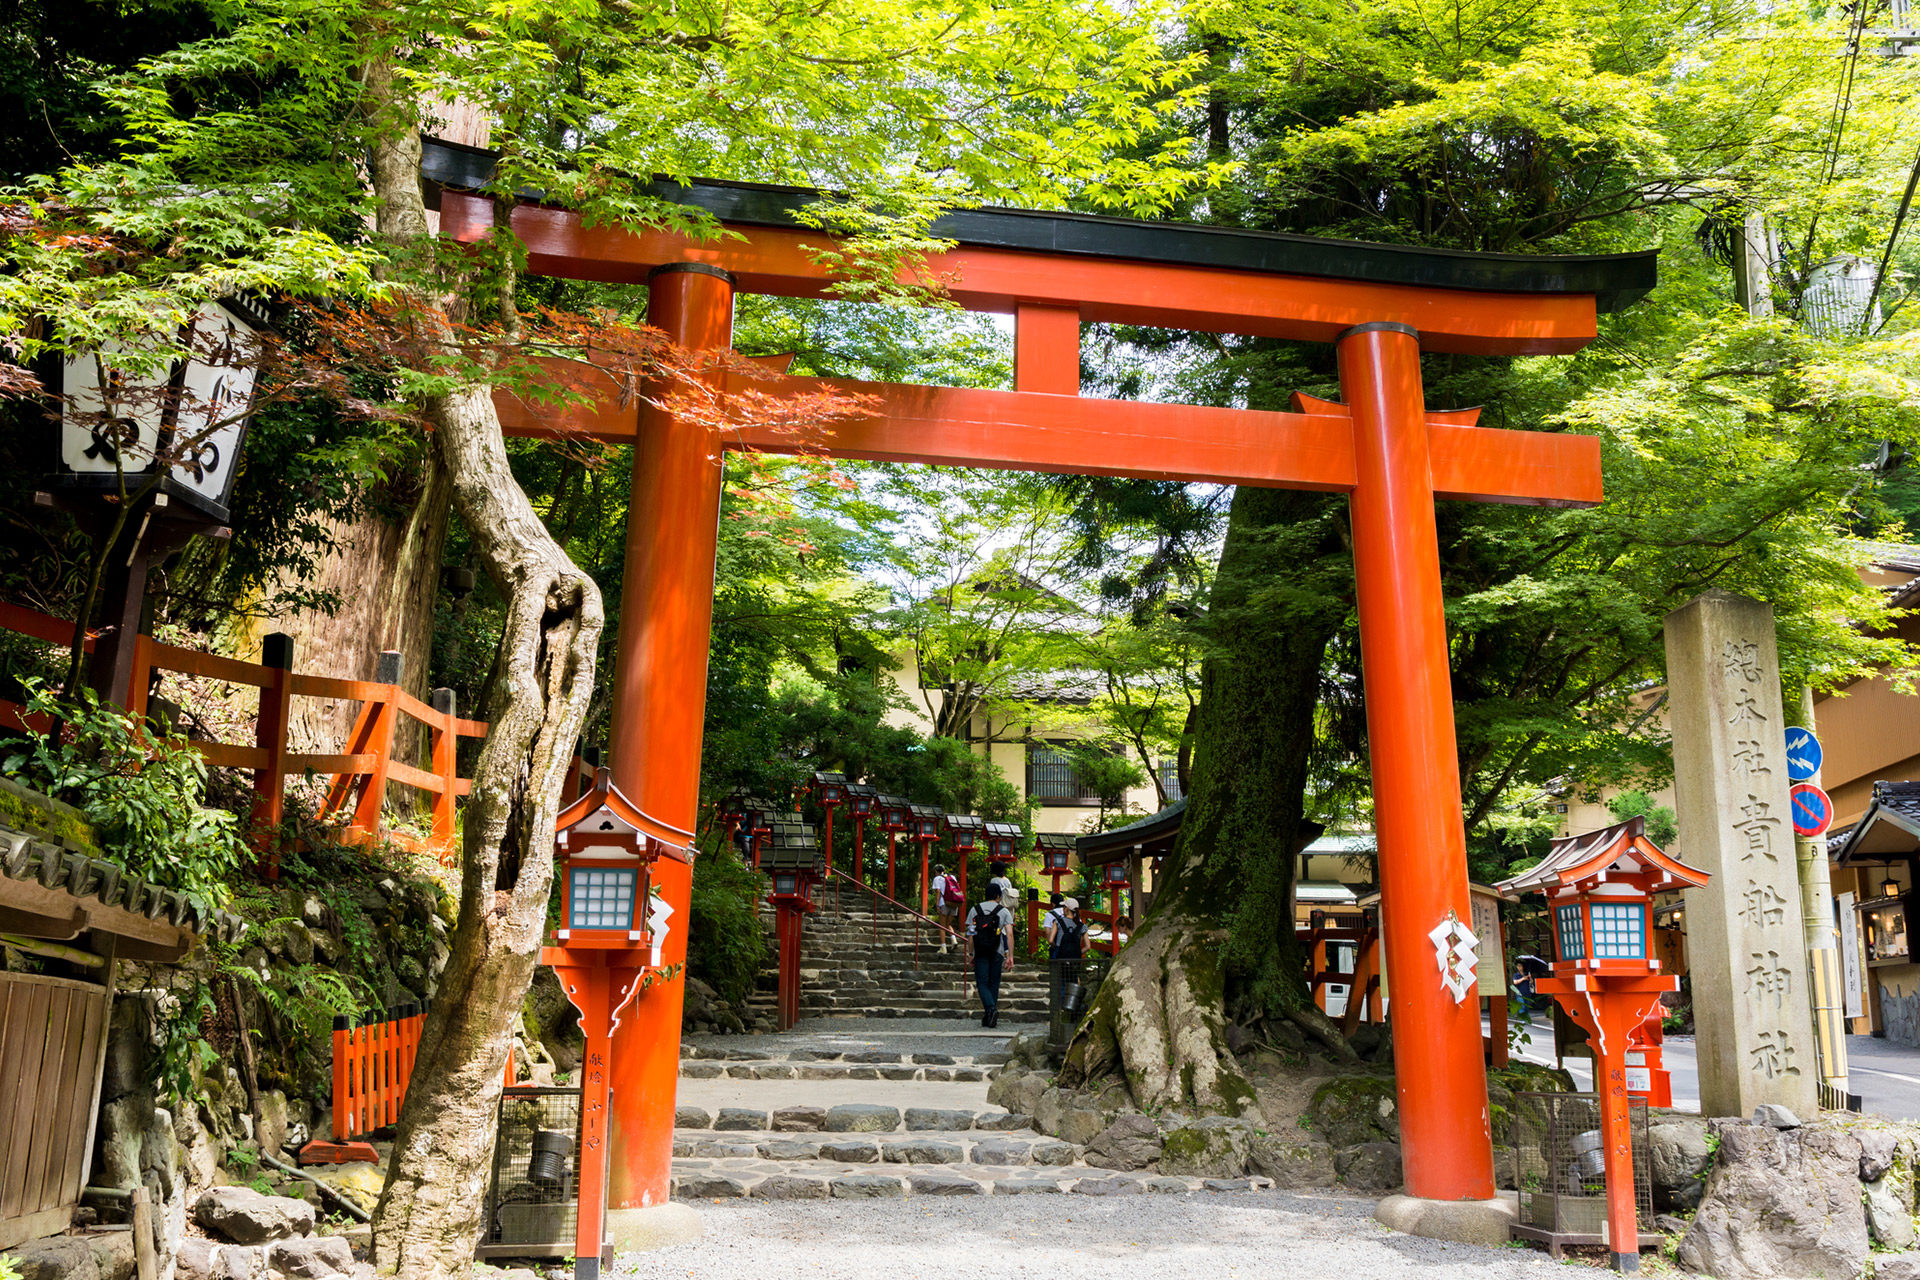 京都を観光して夏を乗り切りましょう 夏の京都 おすすめ観光スポットをご紹介します Caedekyoto カエデ京都 紅葉と伝統美を引き継ぐバッグ